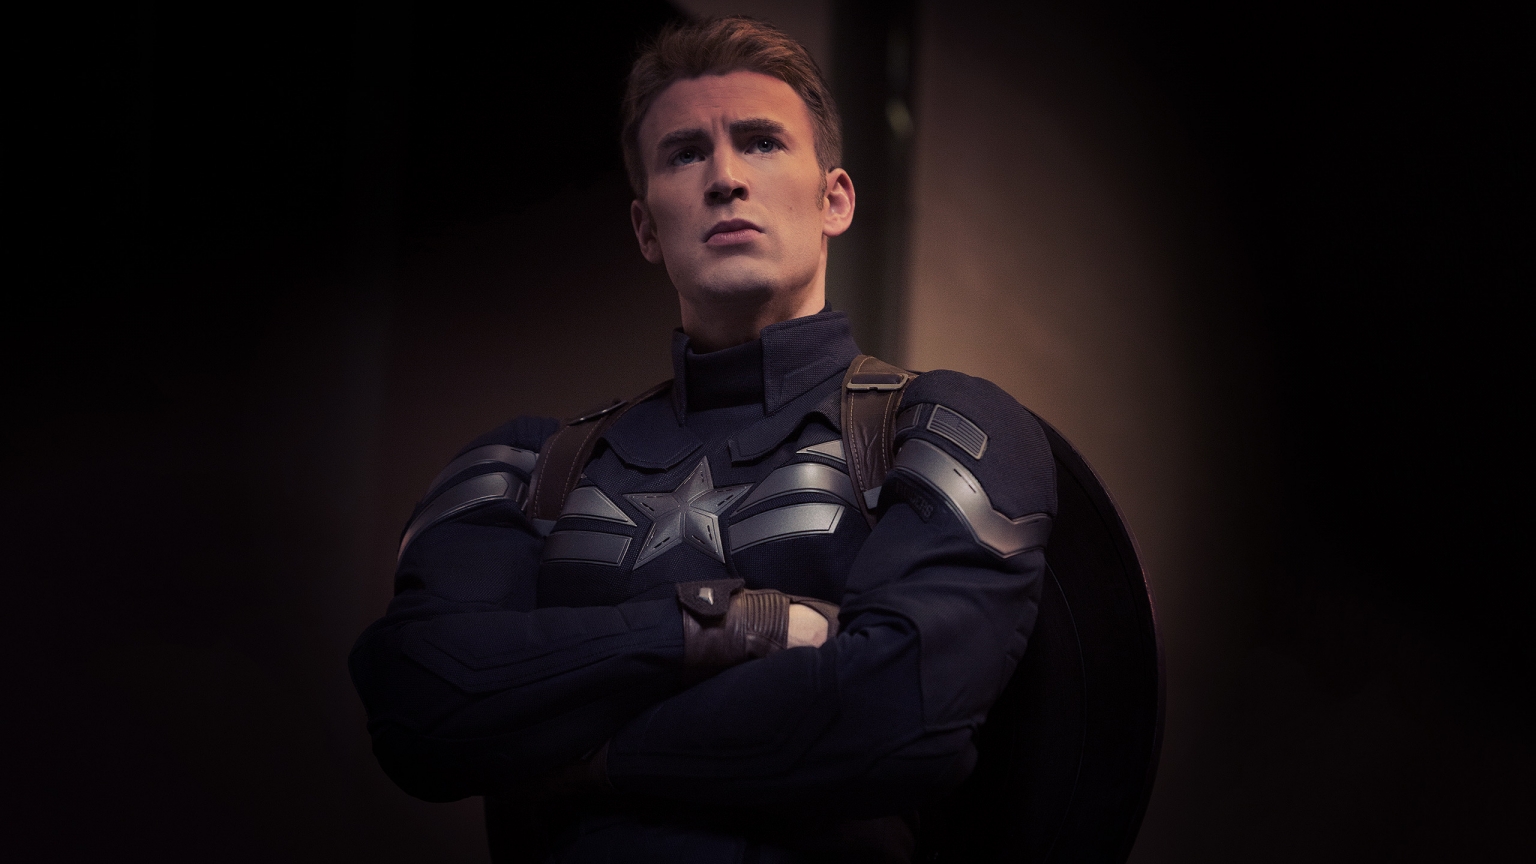 Captain America Marvel for 1536 x 864 HDTV resolution